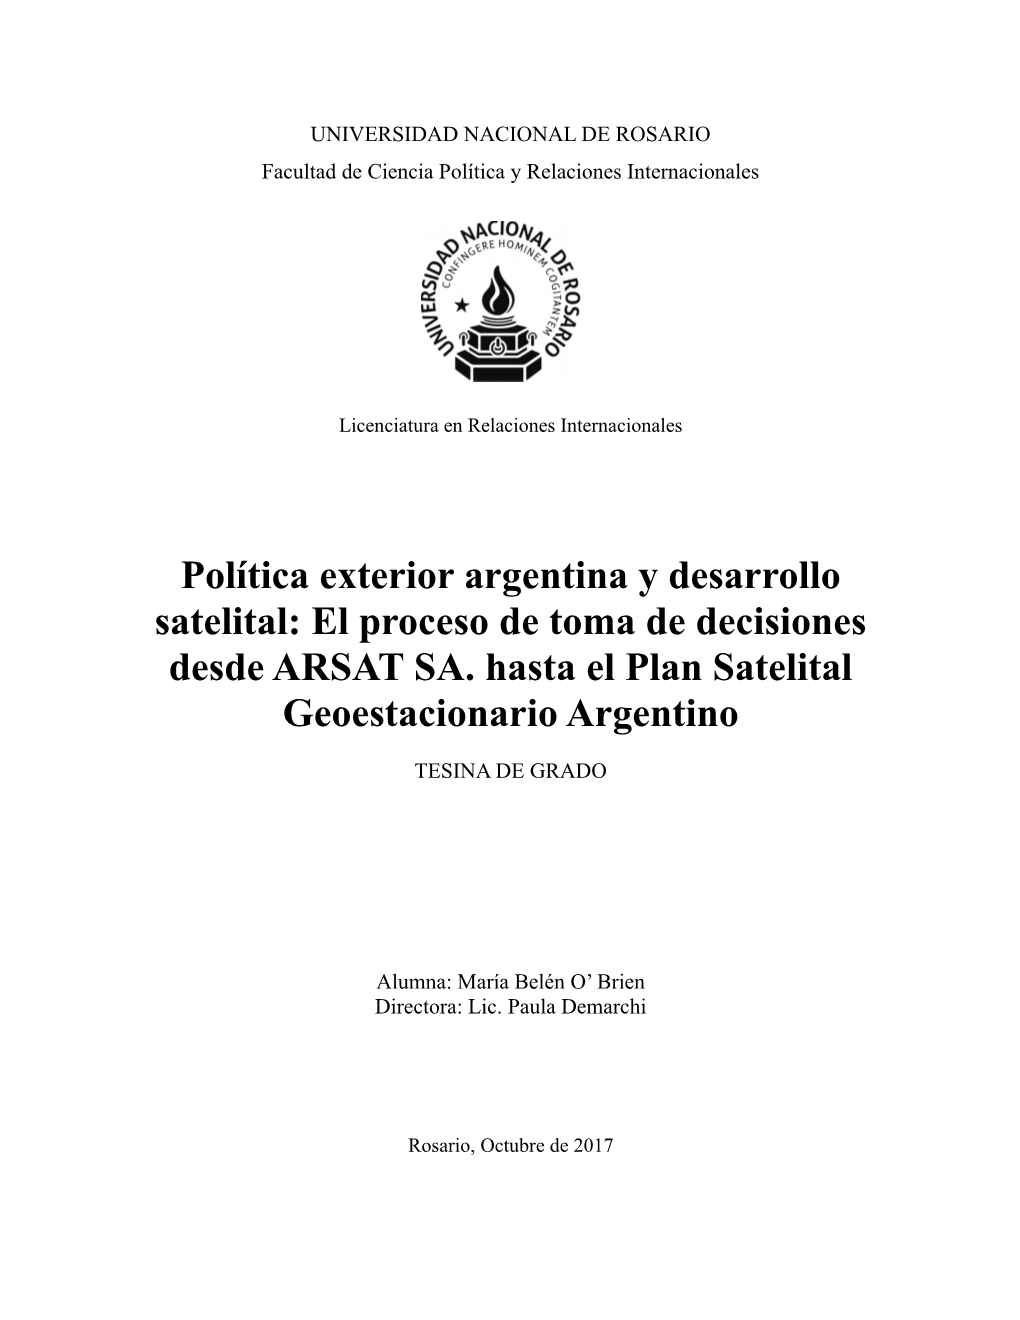 Política Exterior Argentina Y Desarrollo Satelital: El Proceso De Toma De Decisiones Desde ARSAT SA